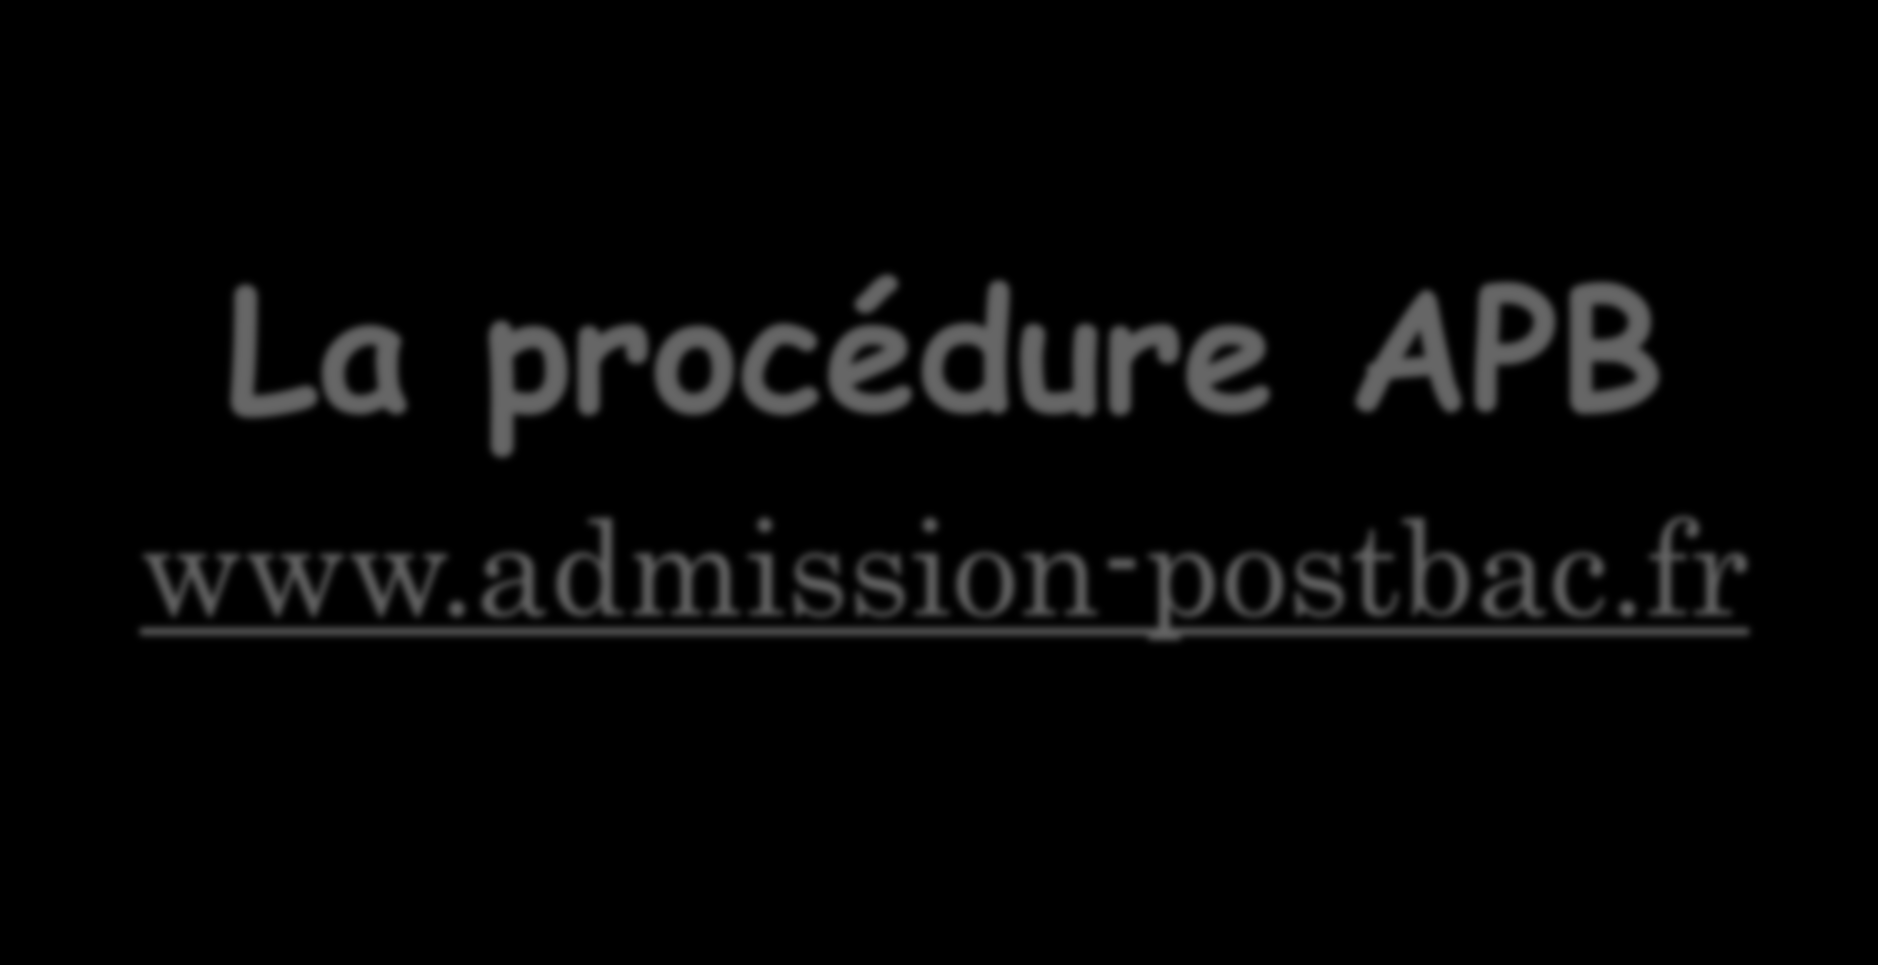 La procédure APB www.